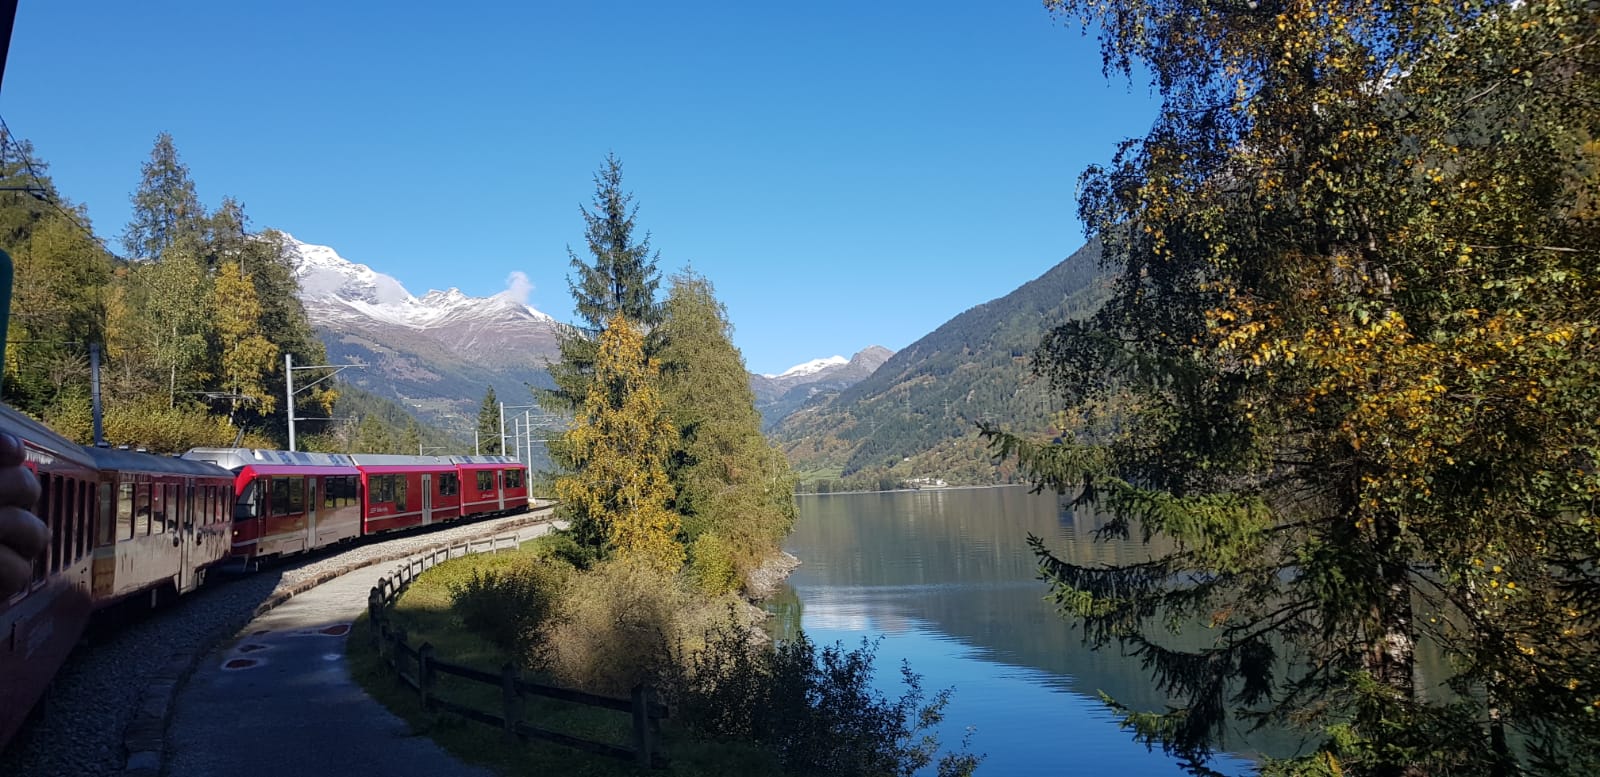 Paisajes desde el tren Bernina Express